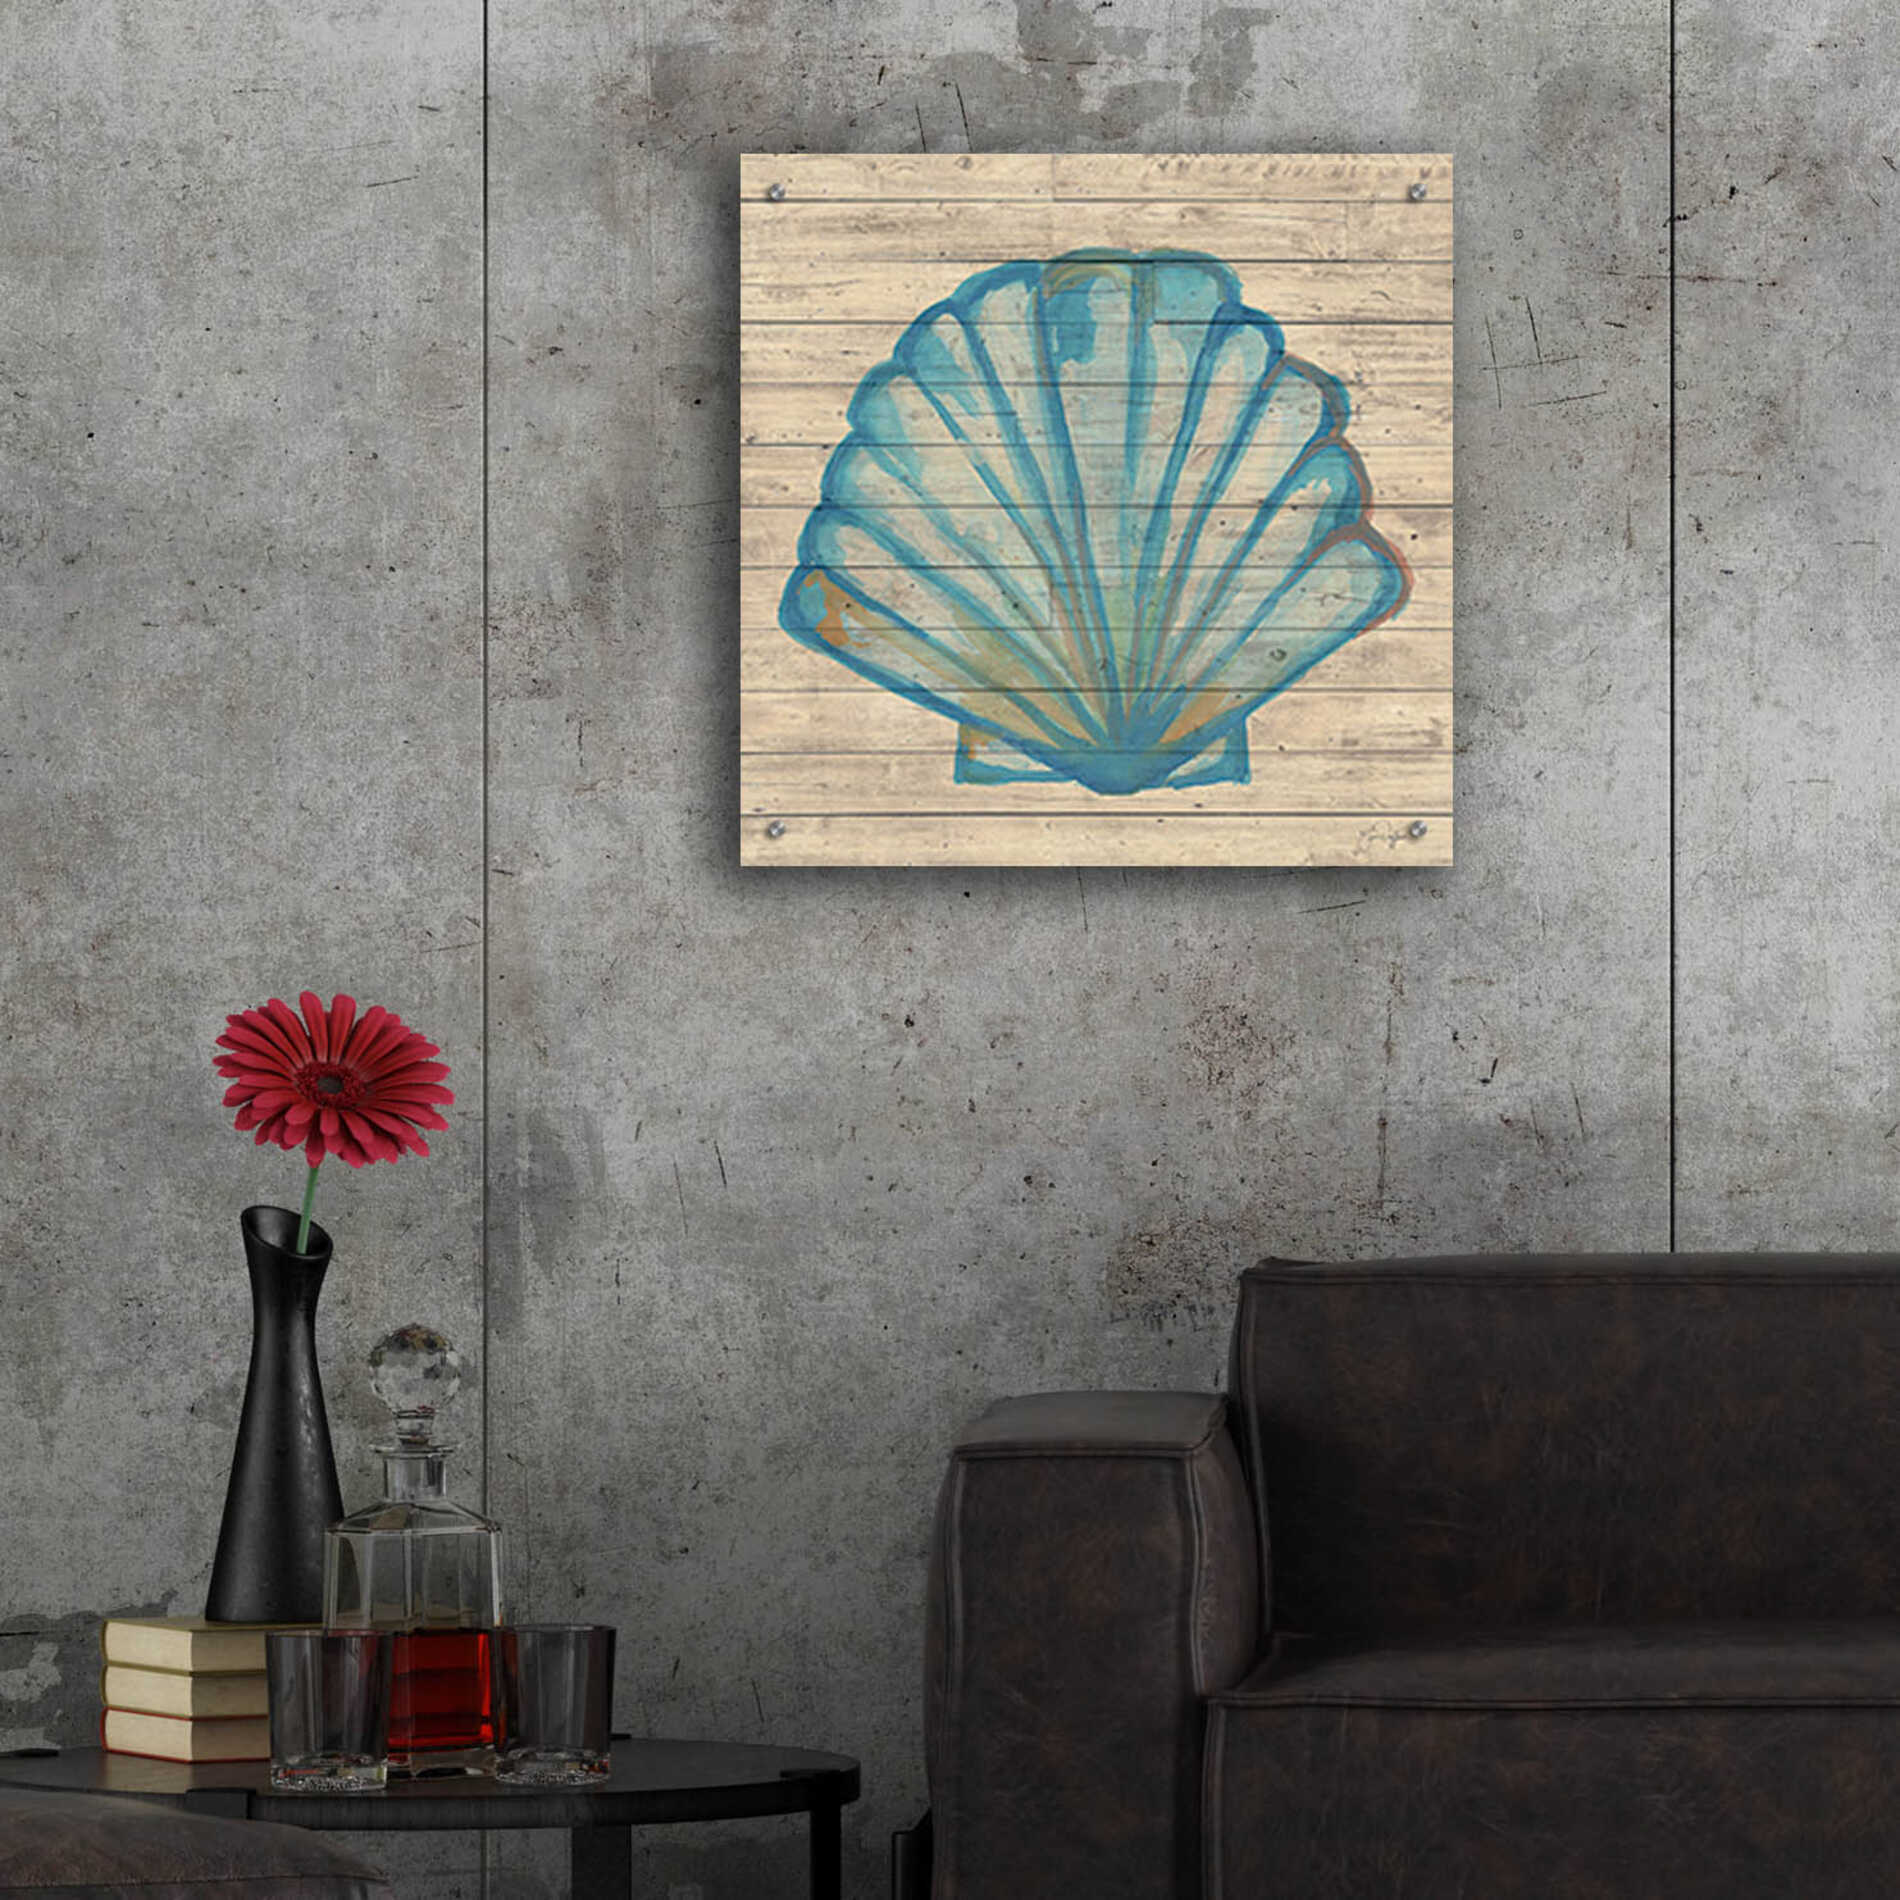 Epic Art 'A Seashell Wish' by Yass Naffas Designs, Acrylic Glass Wall Art,24x24